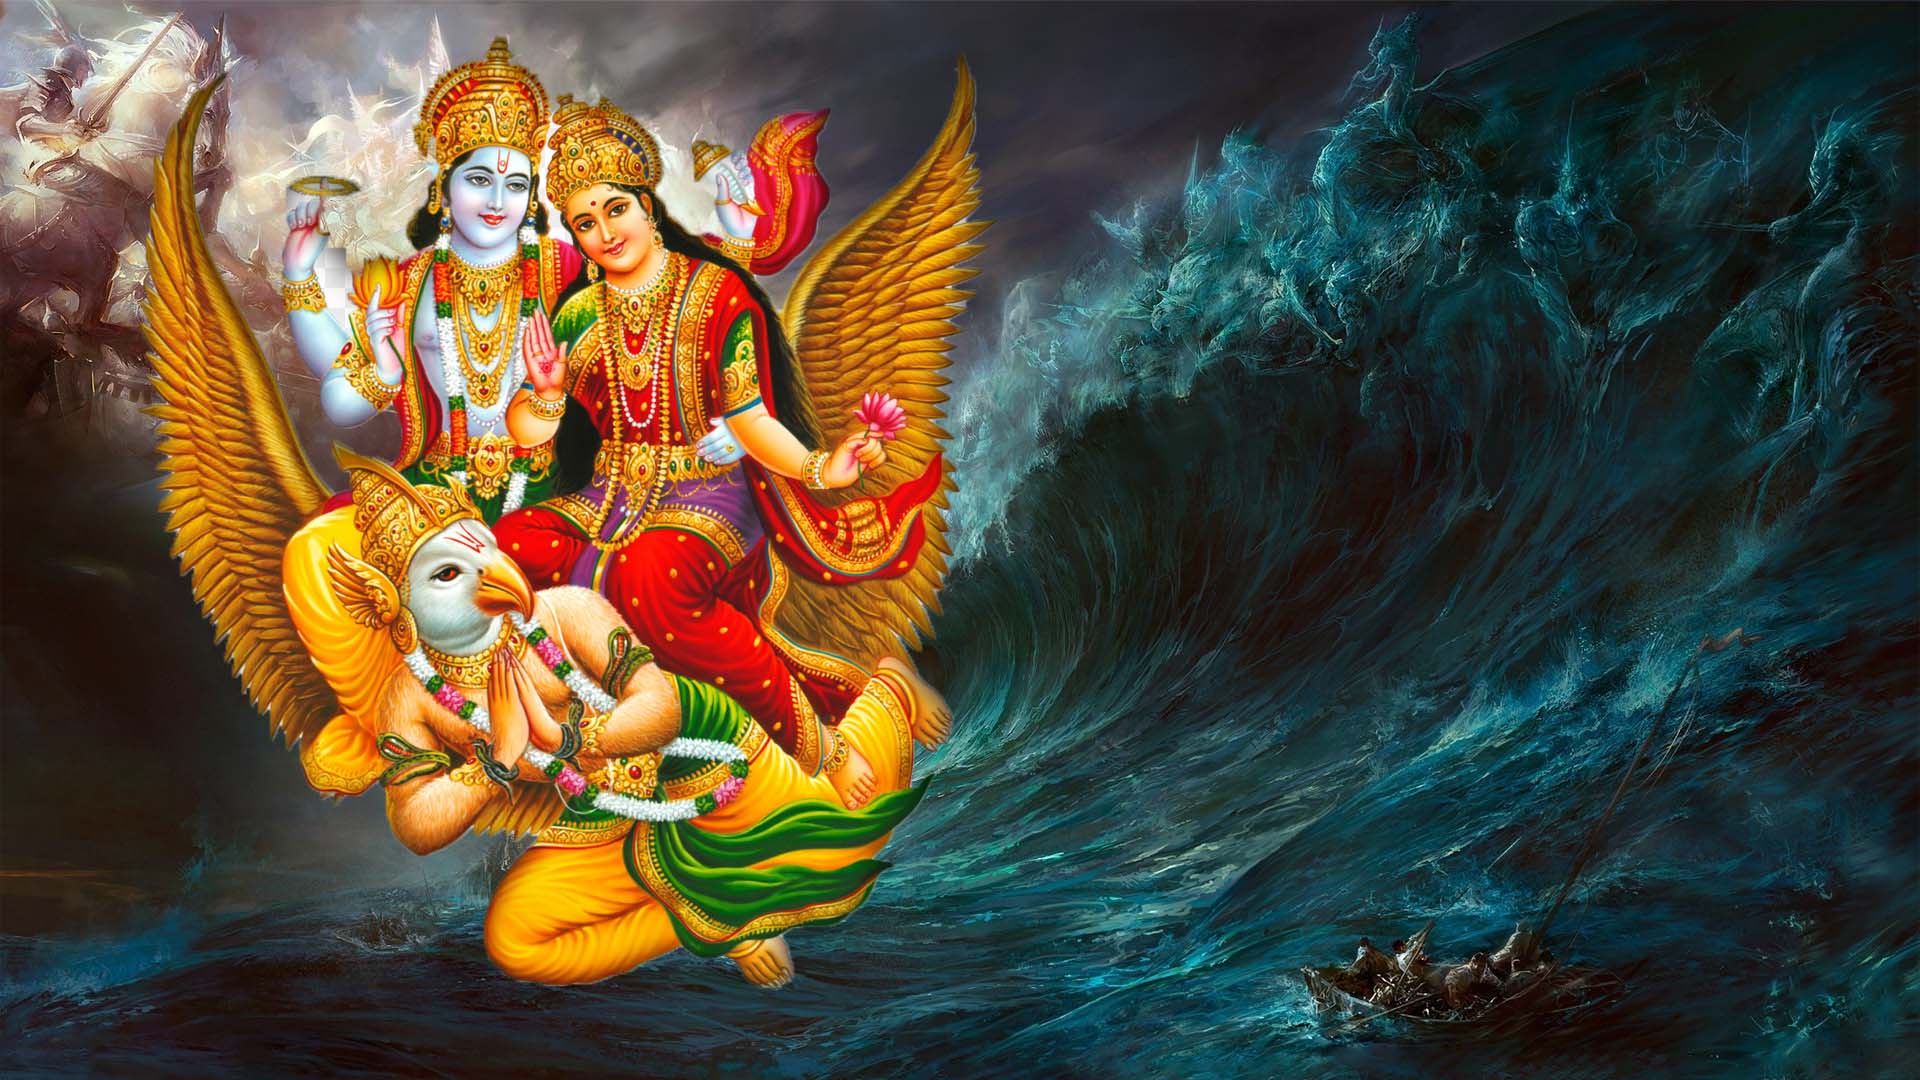 Vishnu Laxmi On Garuda | Hindu Gods and Goddesses